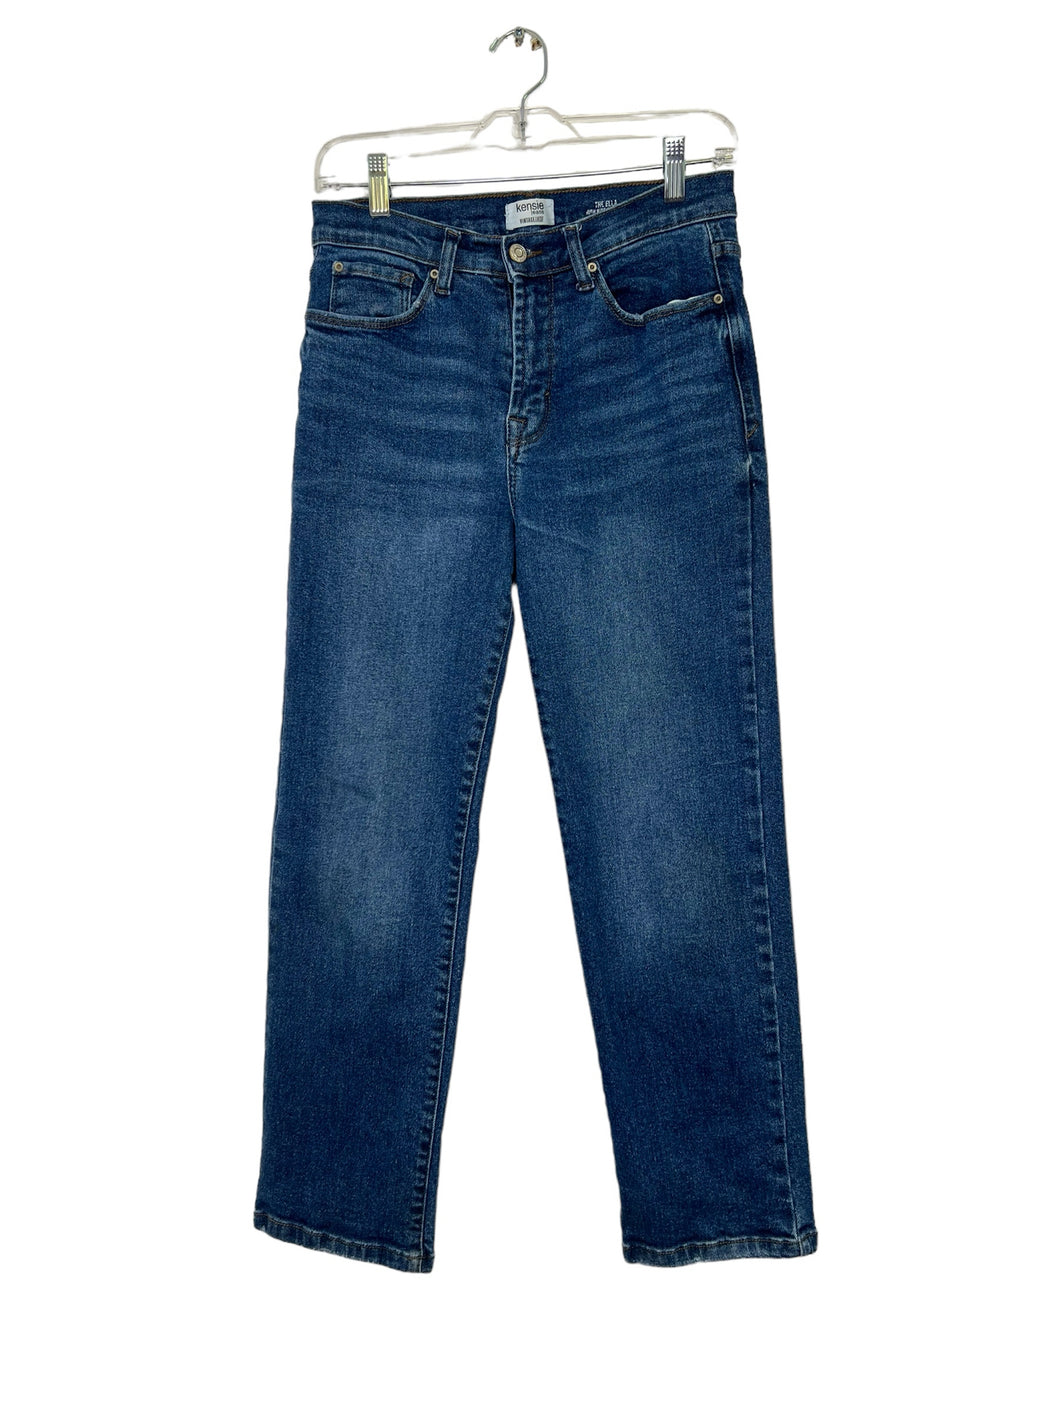 Kensie Size 6 Denim Jeans- Ladies